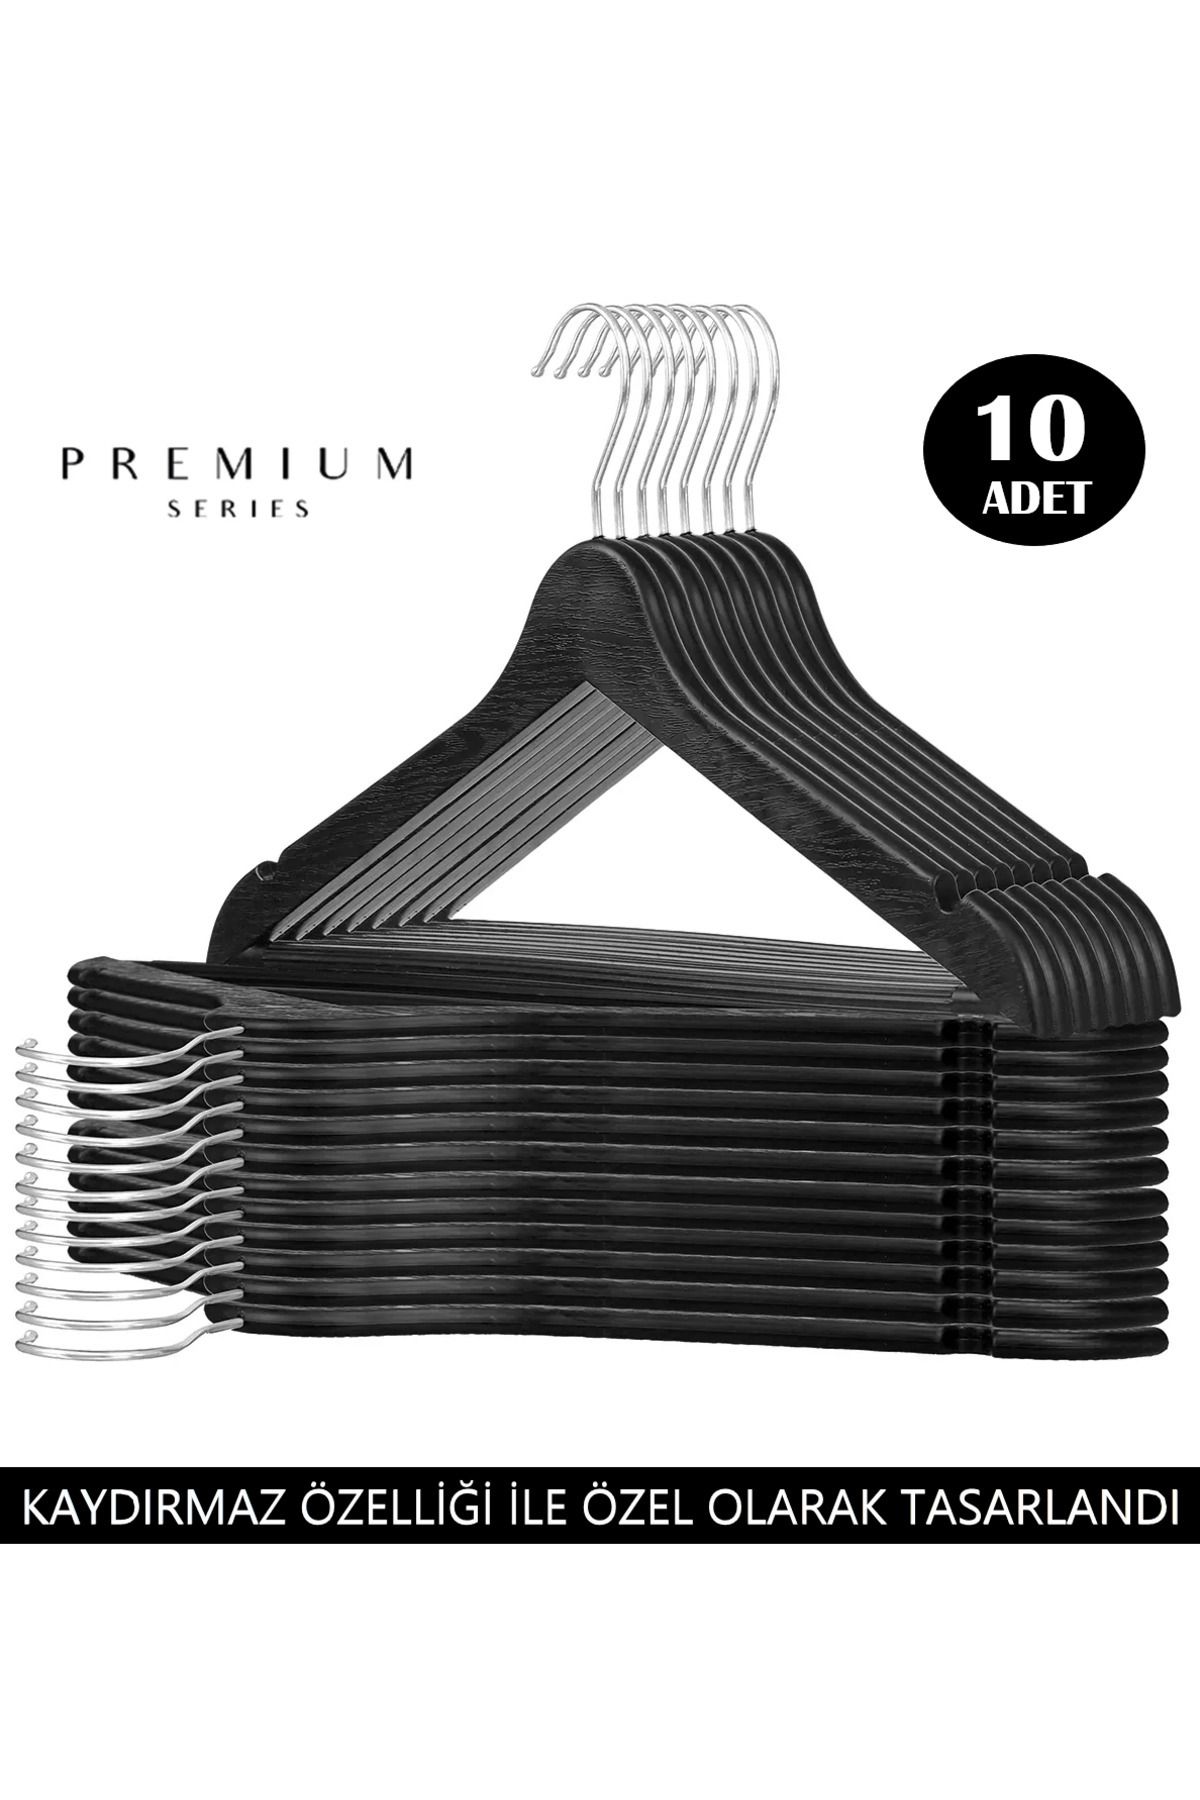 Canowe Ahşap Görünümlü Plastik Siyah Kıyafet Elbise Askısı Askılığı Gömlek Askısı Pantolon Askısı 10'lu